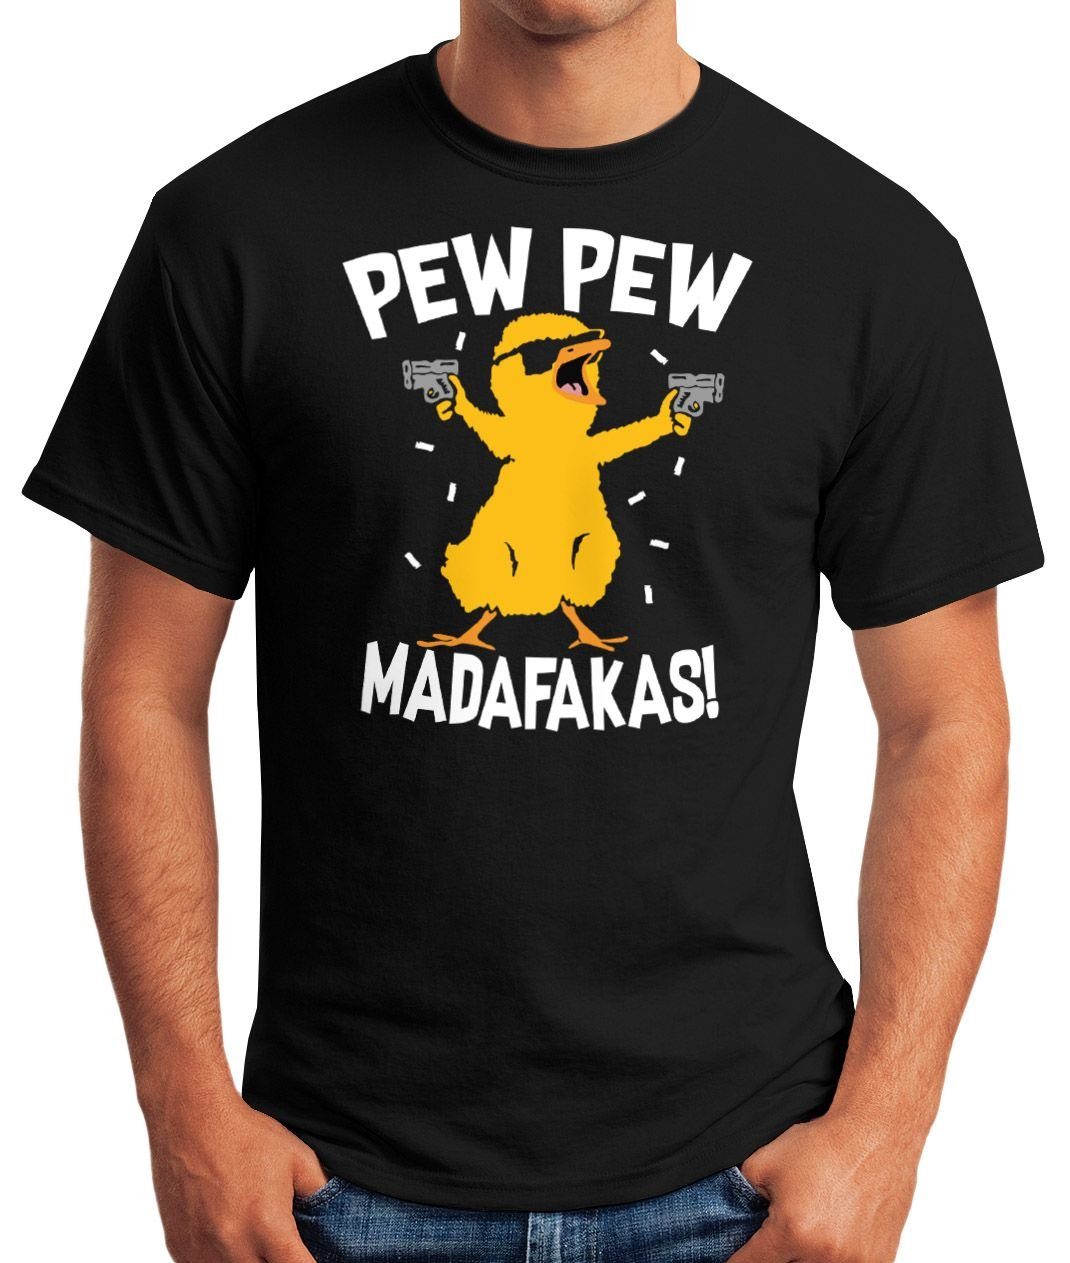 Fun-Shirt T-Shirt Crazy Spruch schwarz mit Pew Chick Madafakas Print-Shirt Moonworks® Küken MoonWorks Herren Meme Trend Pew Print